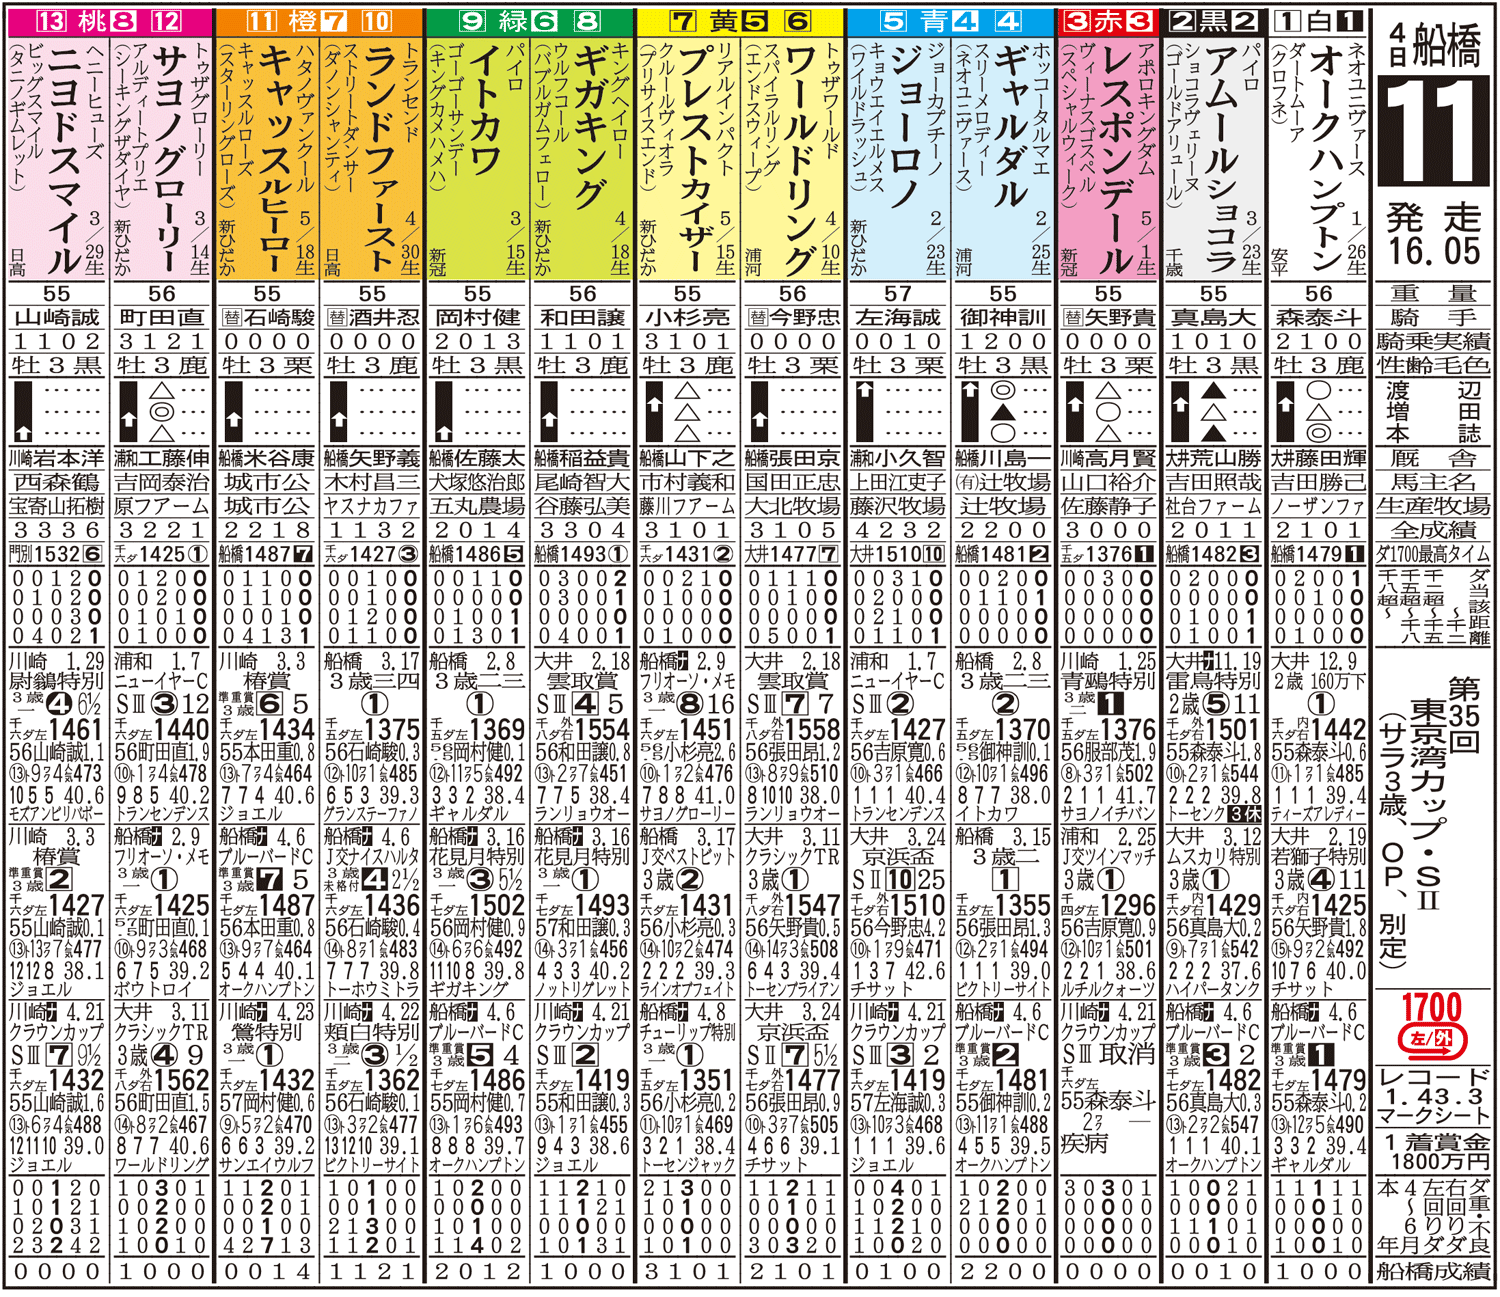 東京湾カップ2021の出馬表